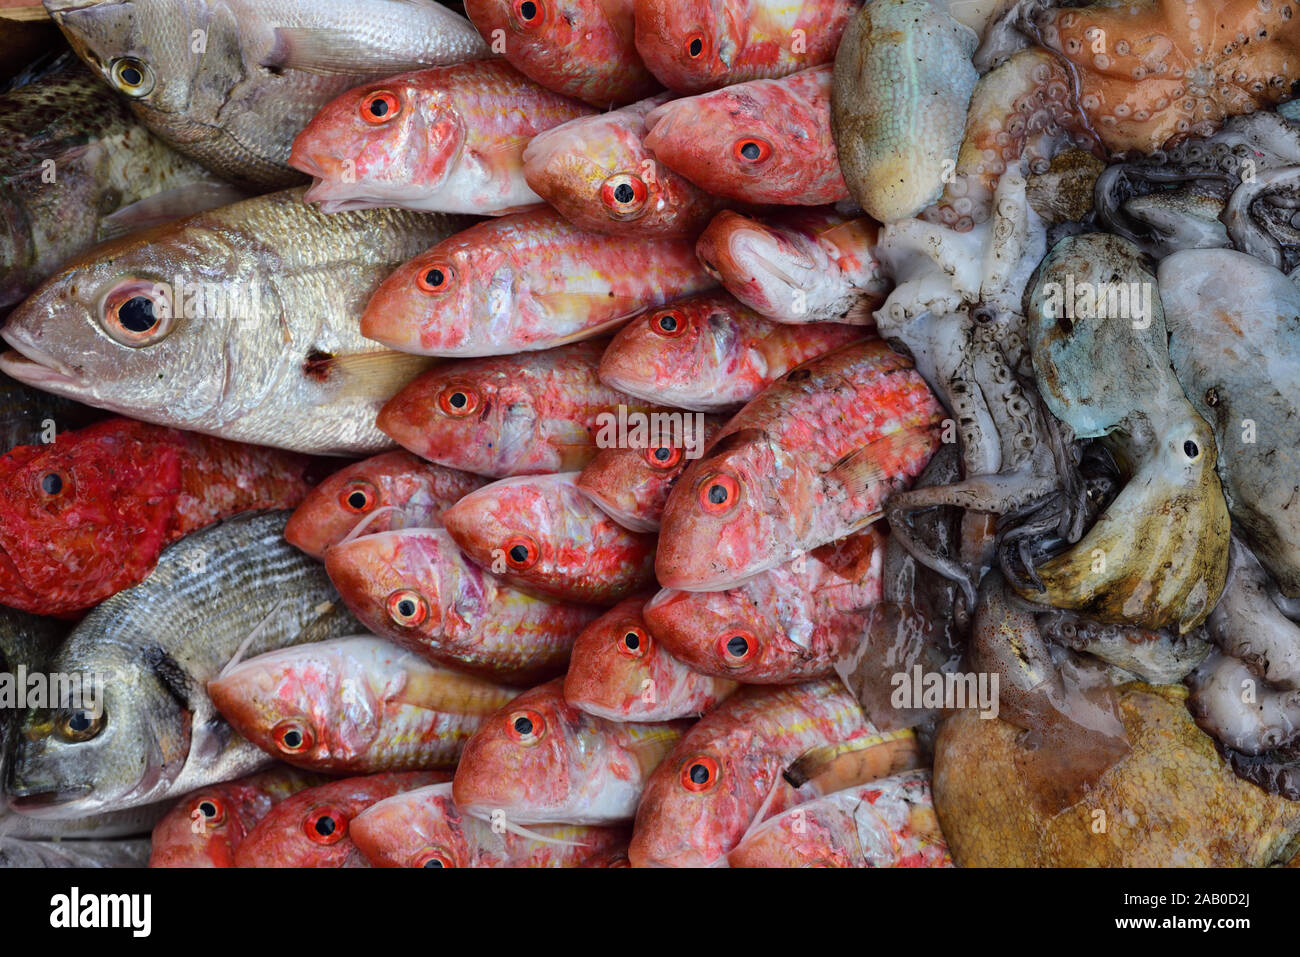 Una selección de pescado fresco y otras especies marinas del Mediterráneo encadenan como fondo Foto de stock